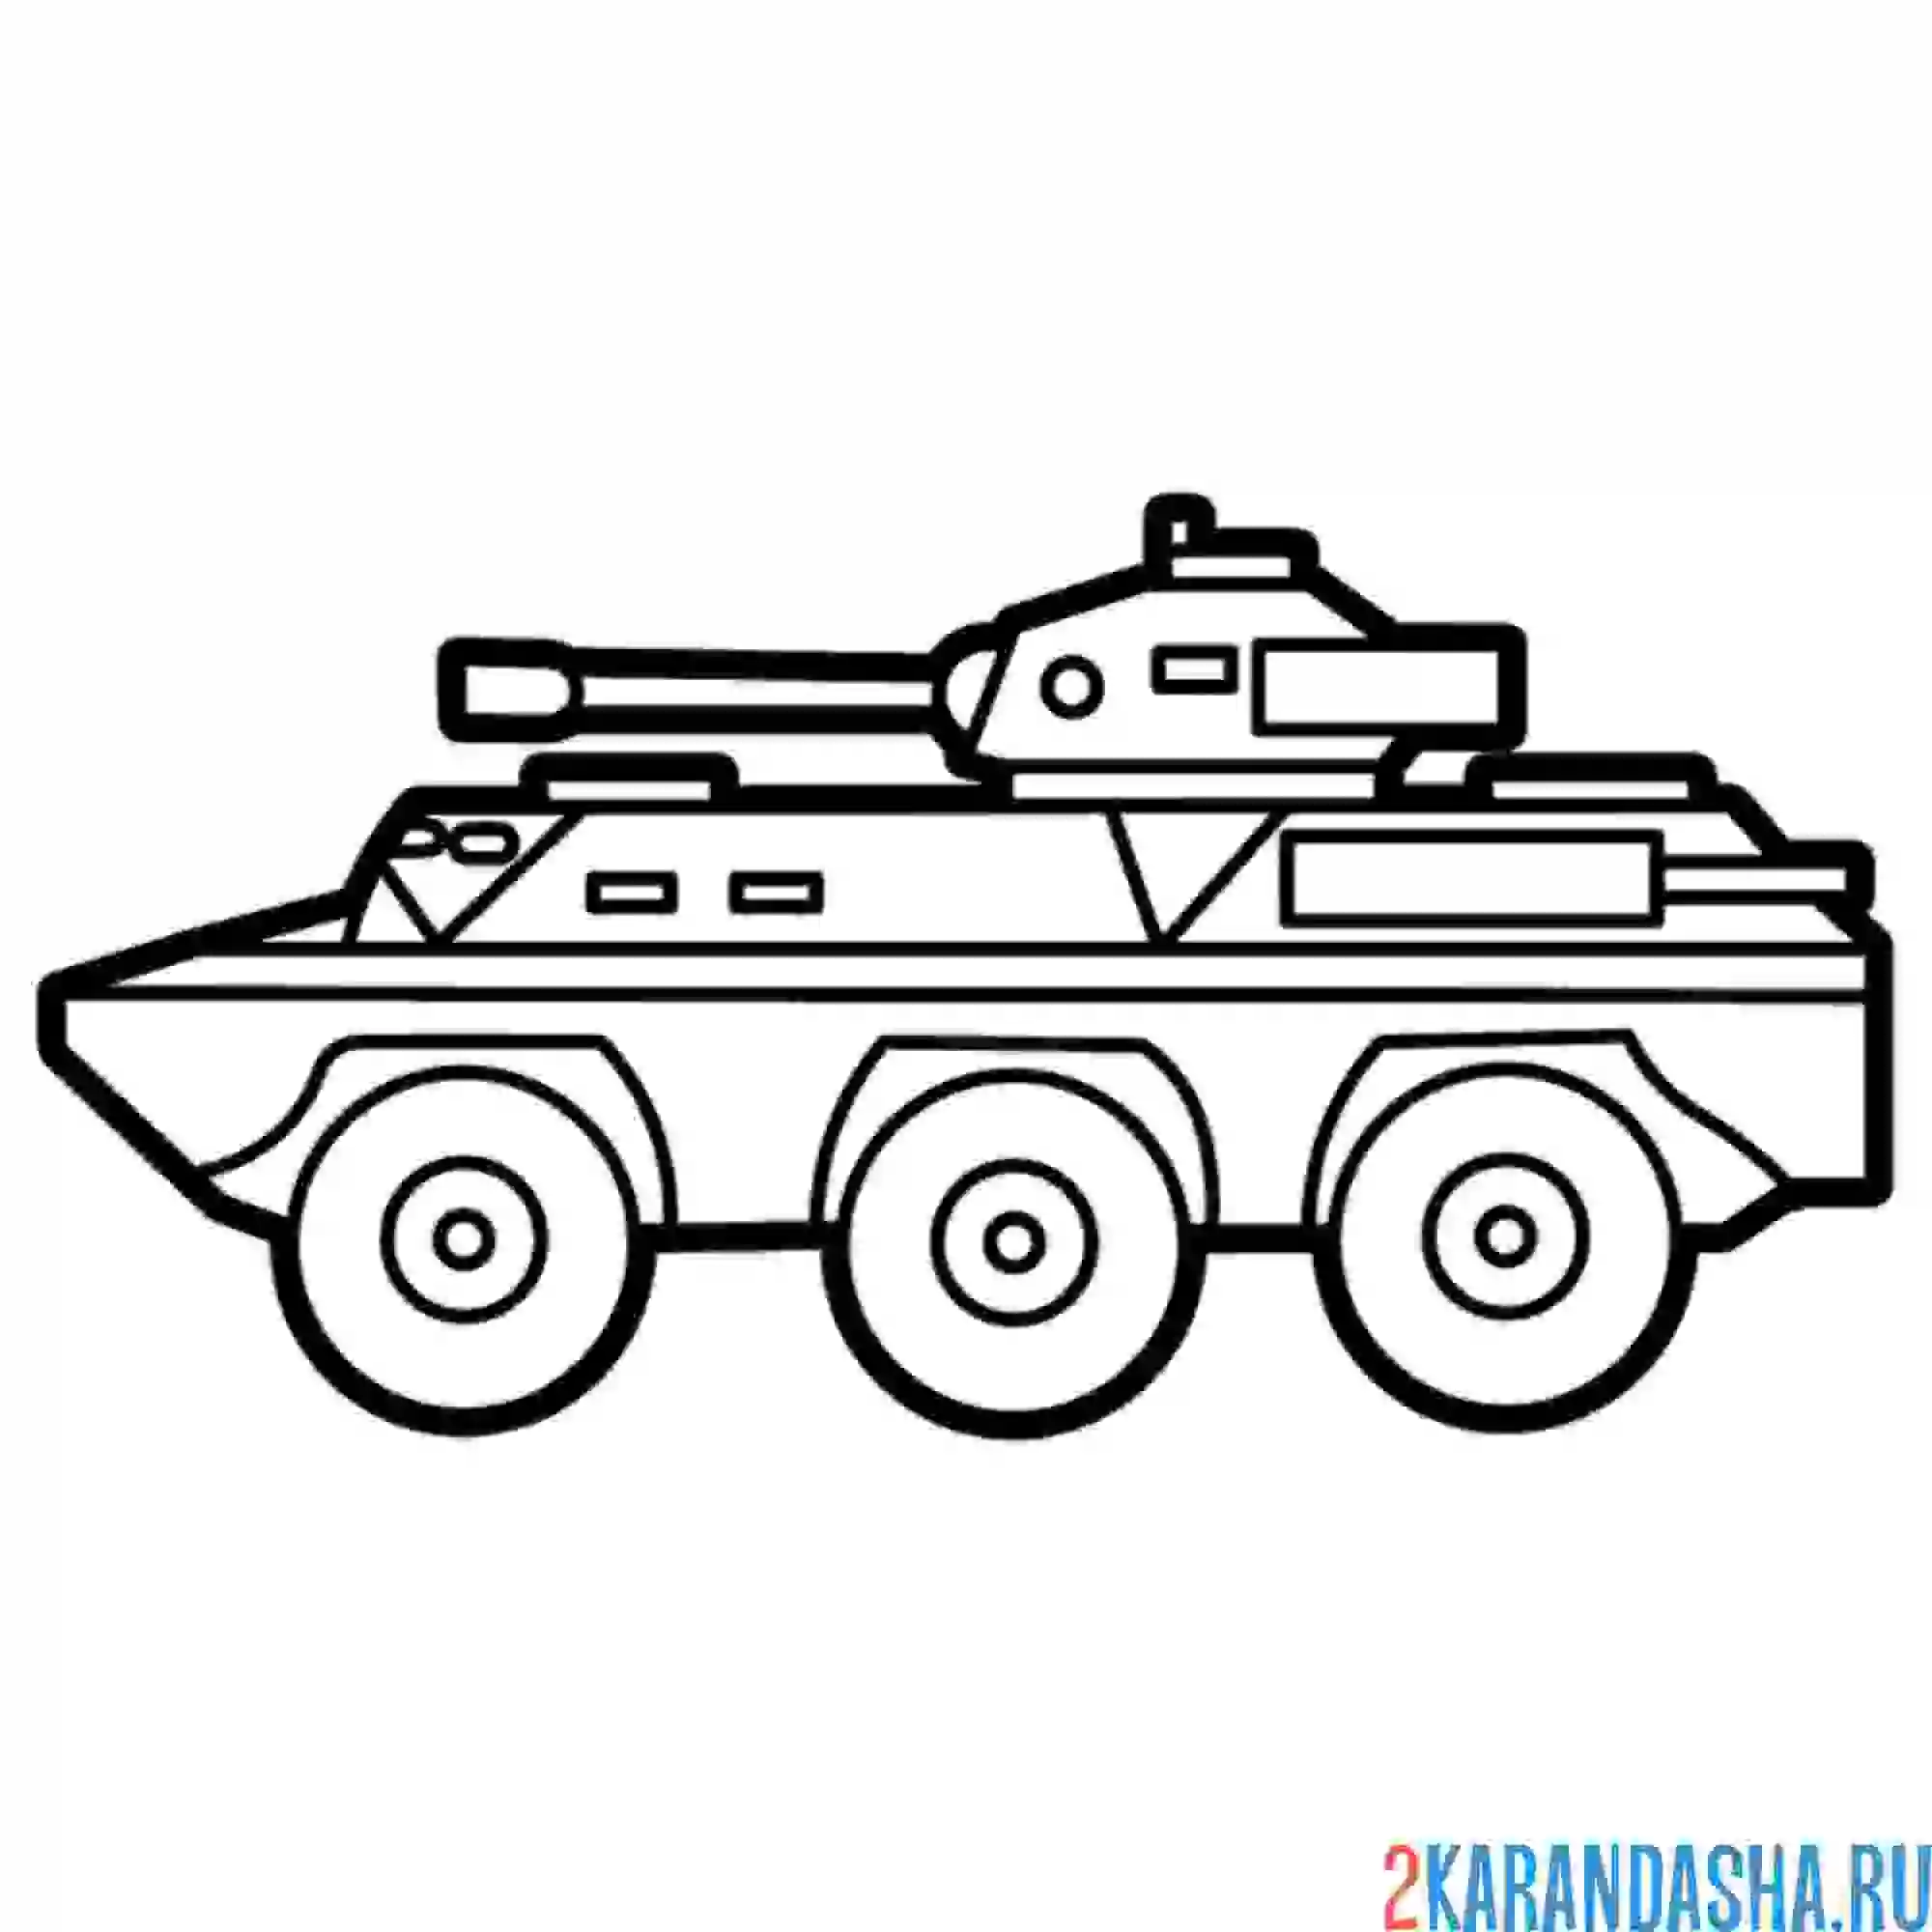 Раскраска современный танк на колесах бтр